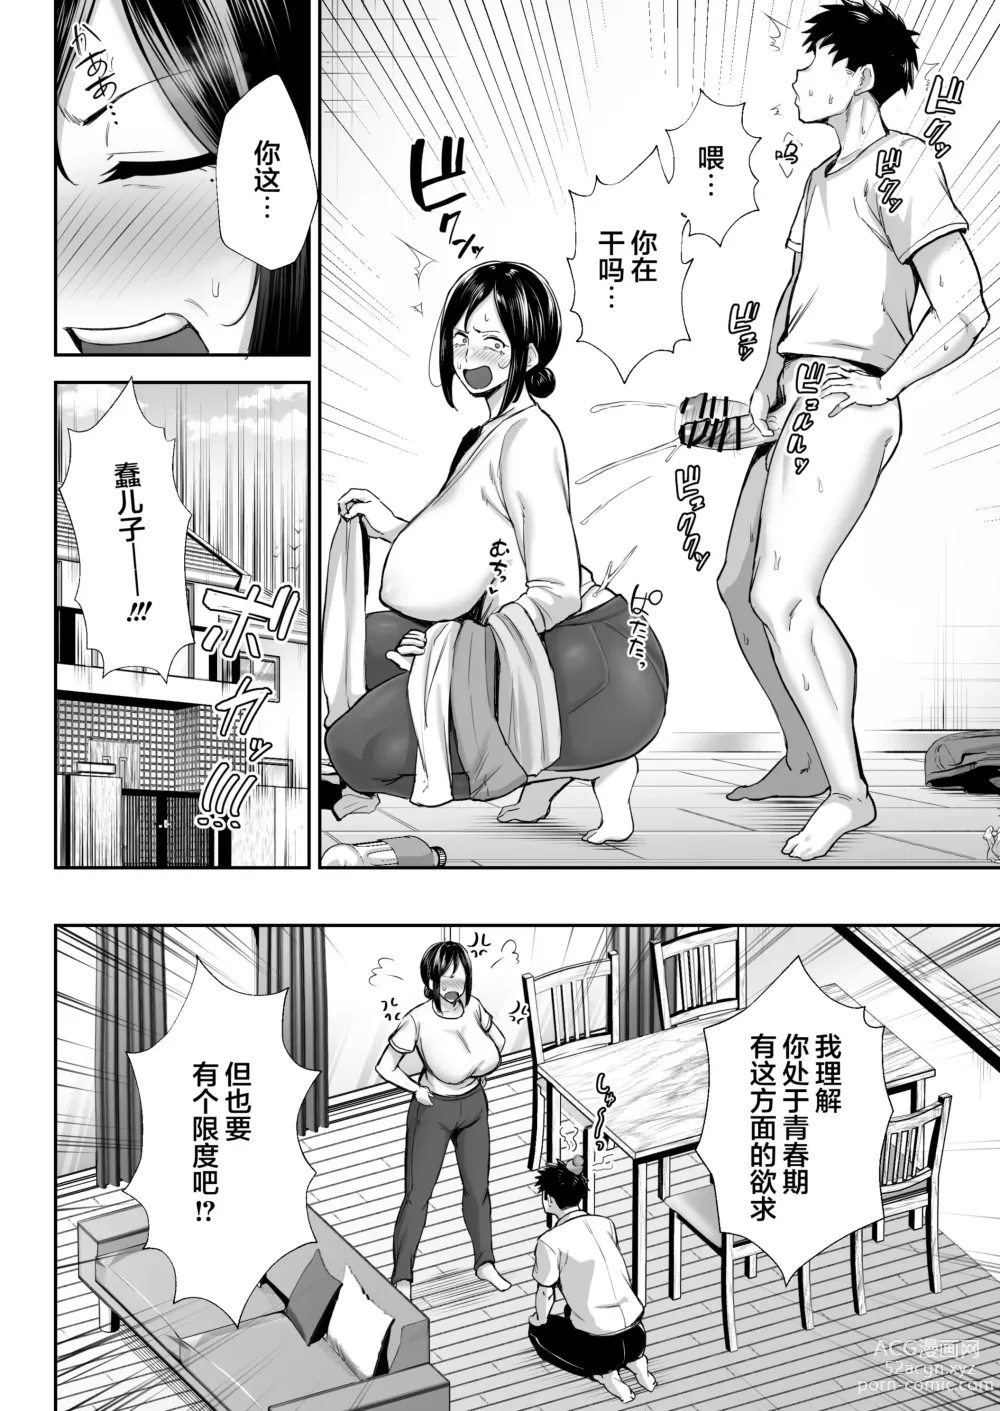 Page 6 of manga [Golden Bazooka (Gagarin Yoshi) Ichiban Mimoto de Eroi Mesuki ~ Haha Dakedo, Shiko Saru Musuko ni Komatteimasu]